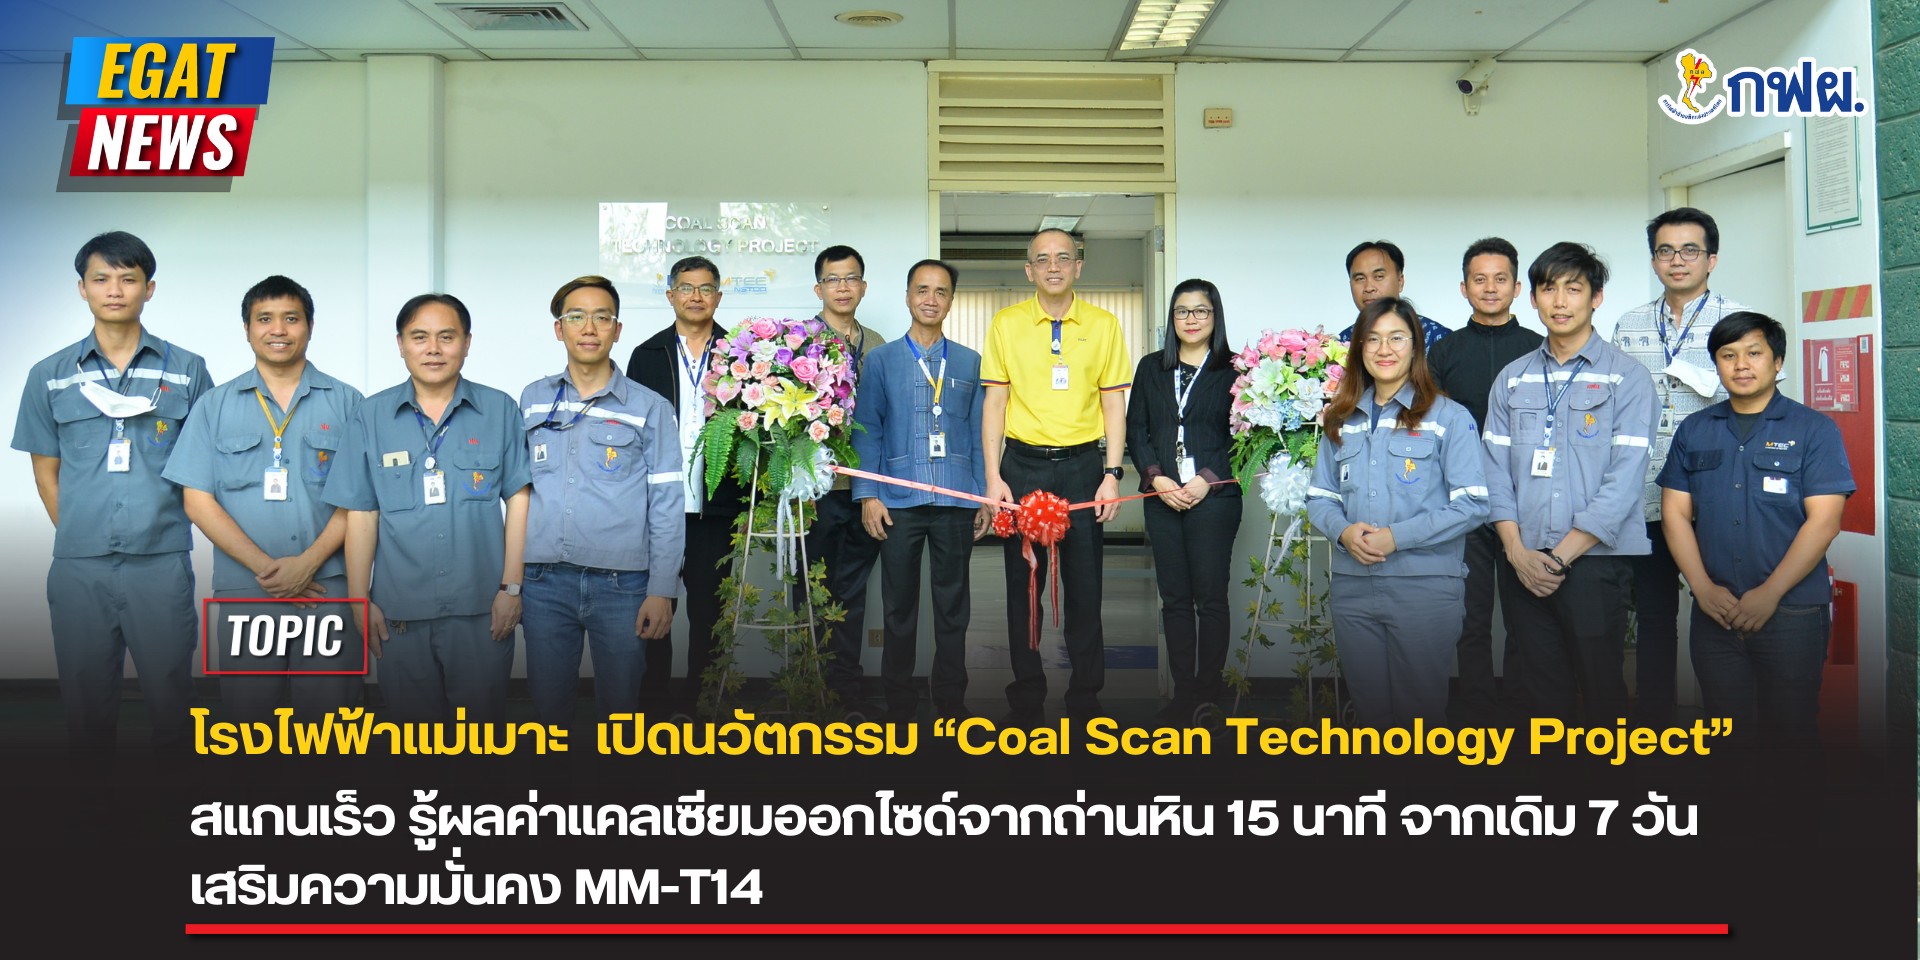 โรงไฟฟ้าแม่เมาะ เปิดนวัตกรรม “Coal Scan Technology Project” สแกนเร็ว รู้ผลค่าแคลเซียมออกไซด์จากถ่านหิน 15 นาที จากเดิม 7 วัน เสริมความมั่นคง MM-T14